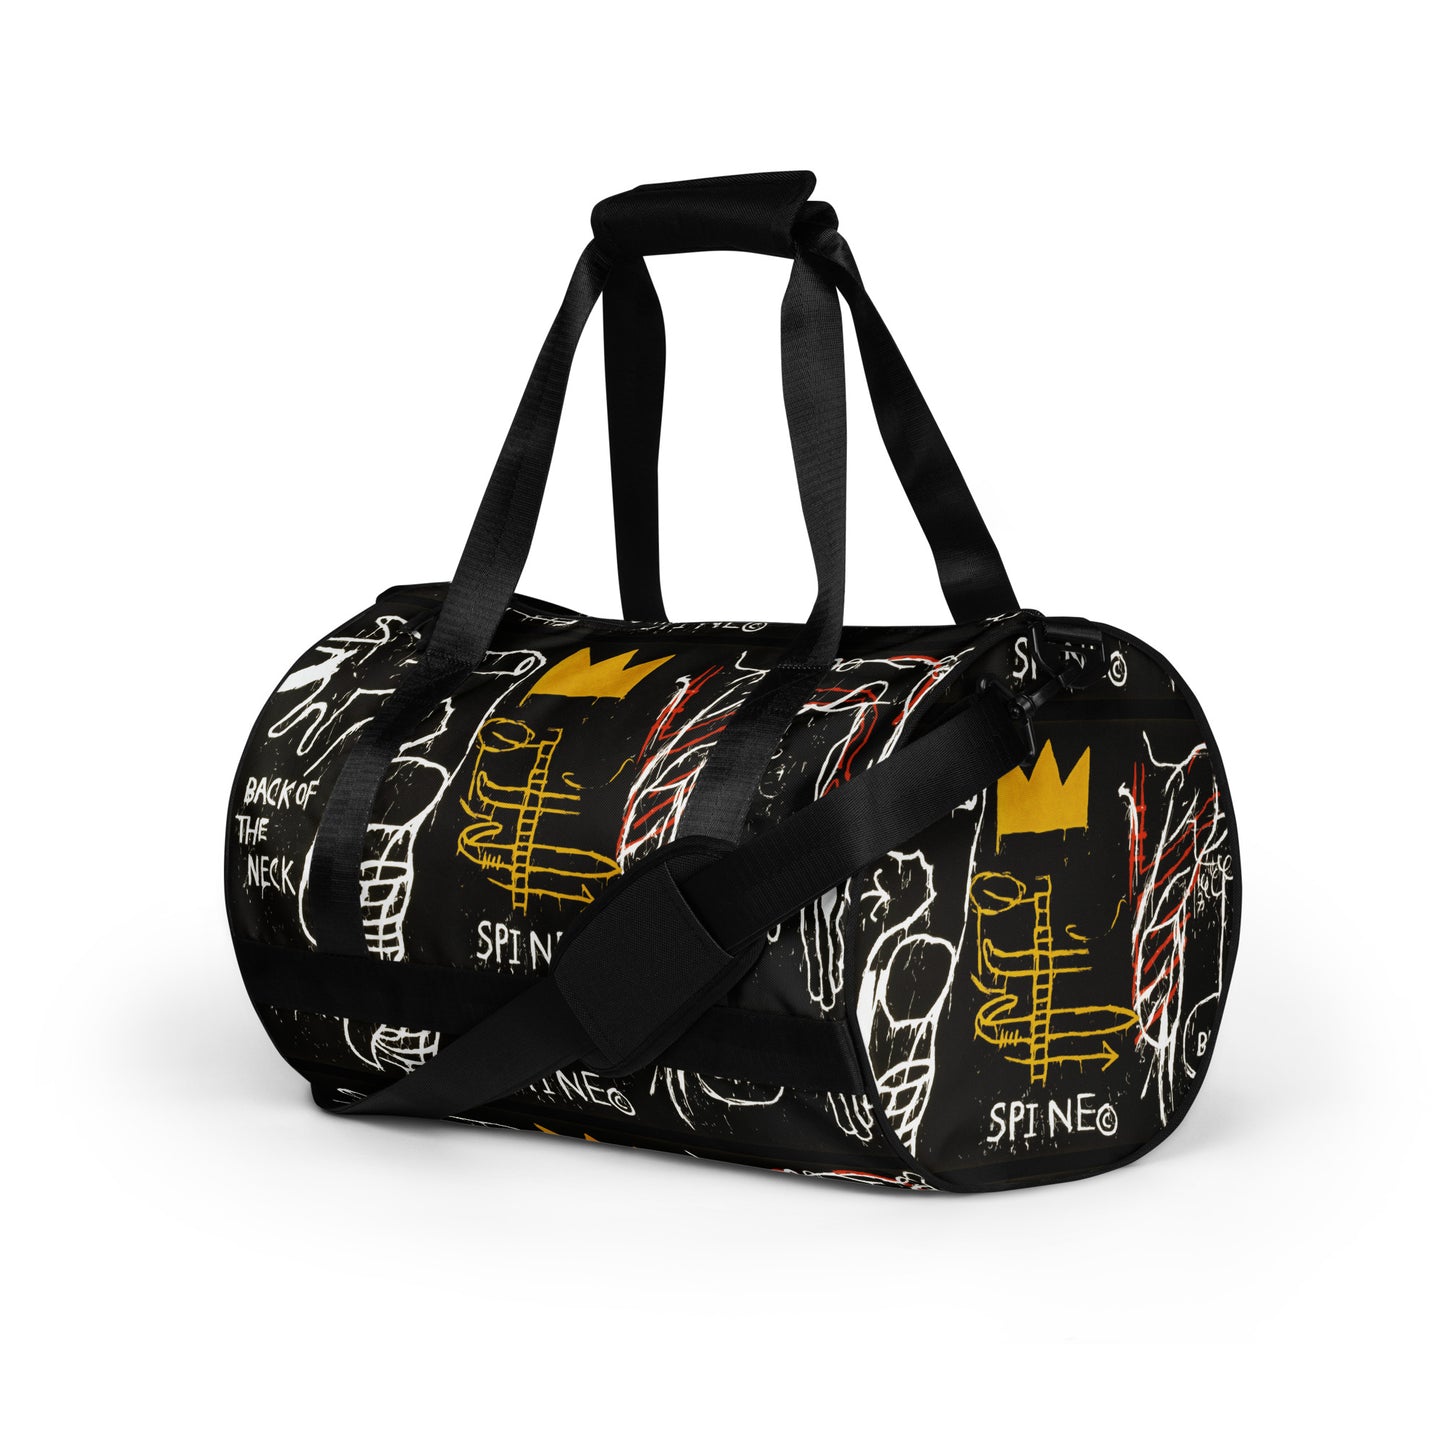 Jean-Michel Basquiat "Back of the Neck" Artwork Bag